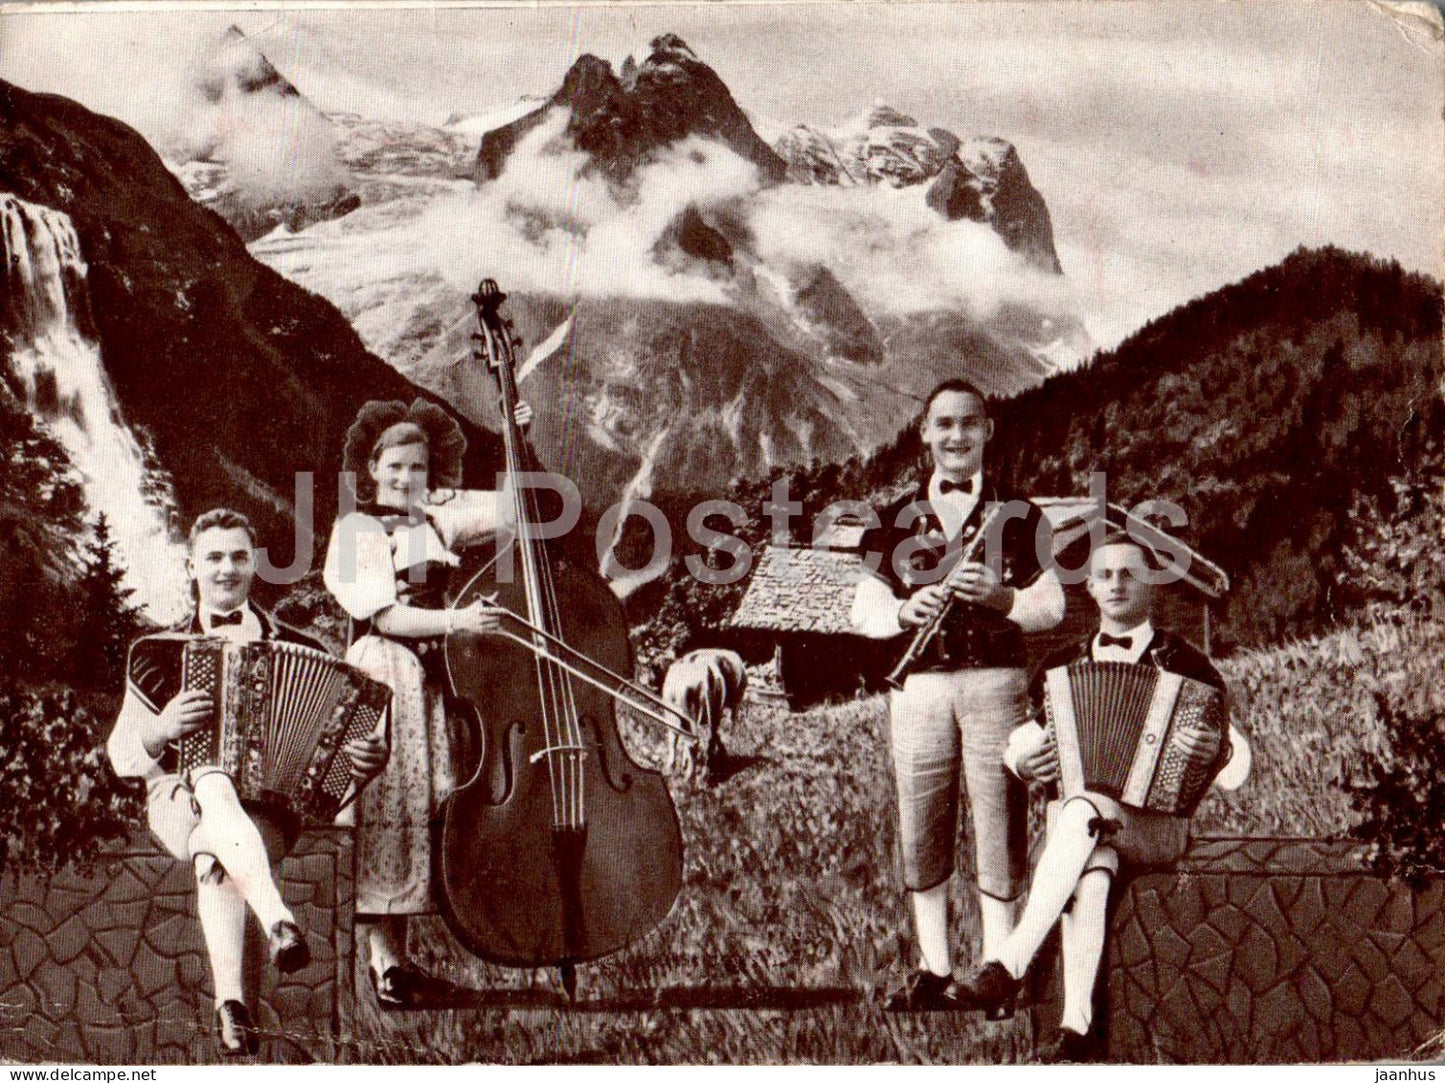 Gebr Mauerhofer und Susi Ogi - Edelweissbuebe - Alchenstorf - folk music - folk costume - Switzerland - unused - JH Postcards